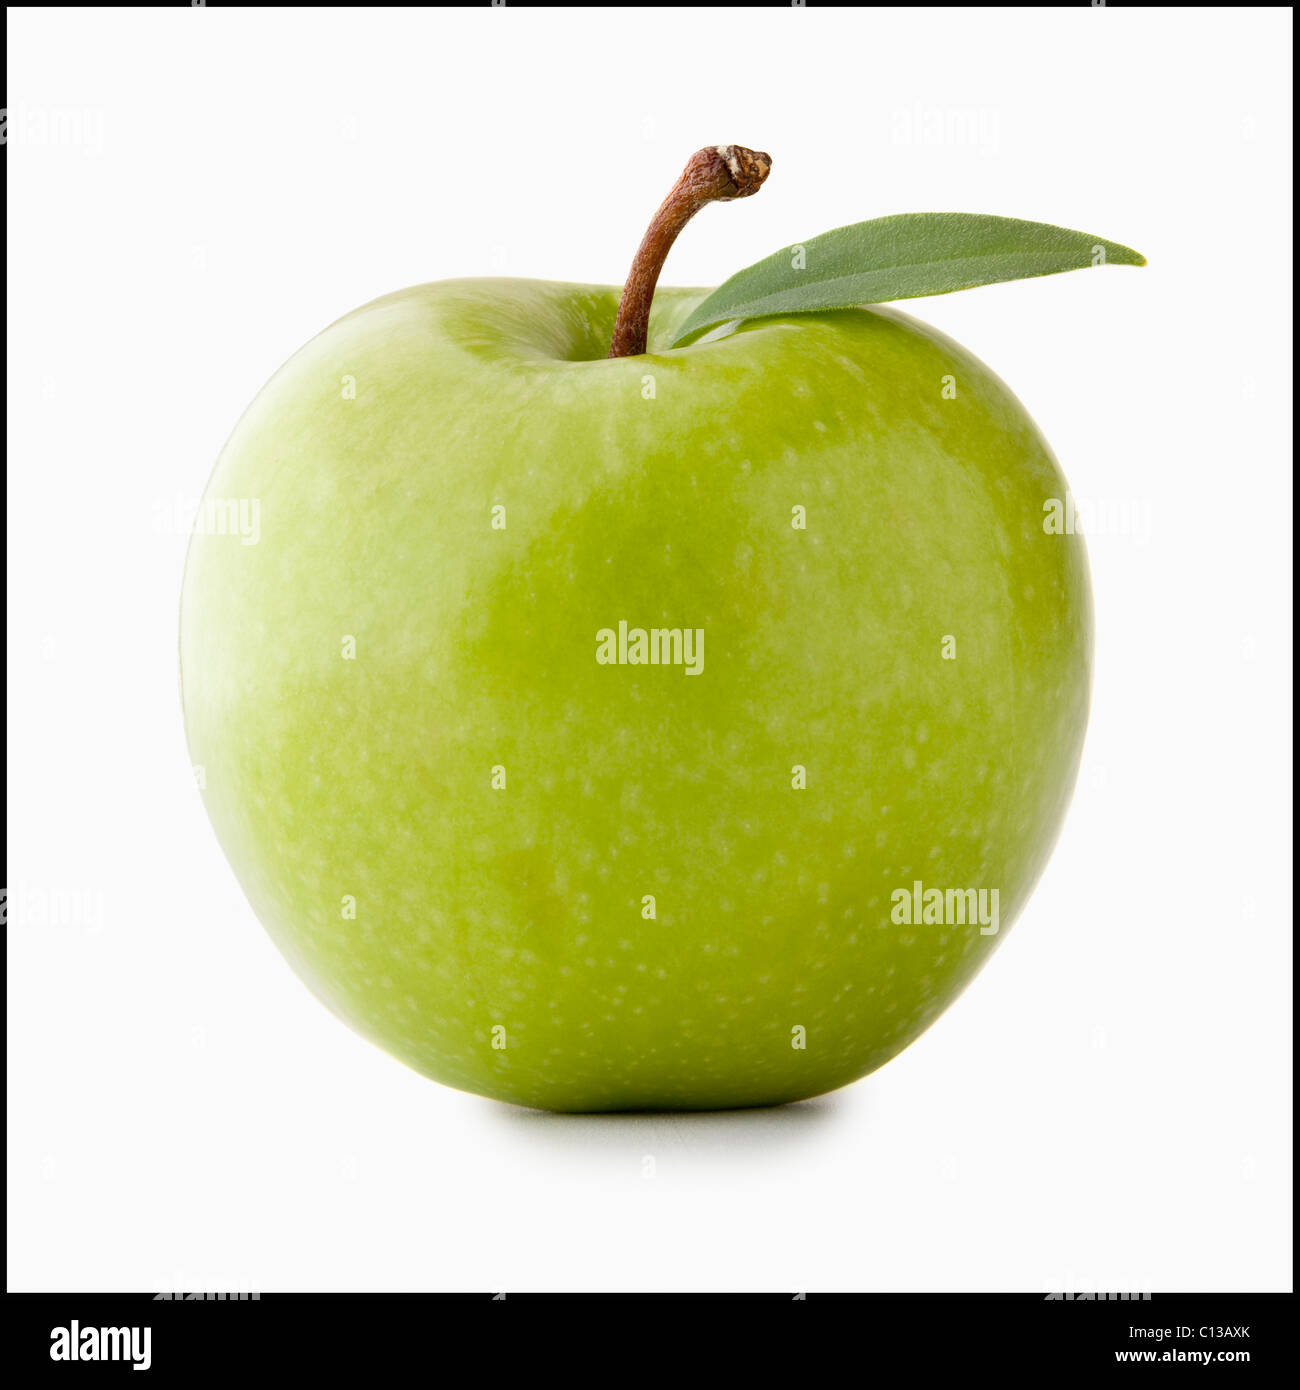 https://c8.alamy.com/comp/C13AXK/studio-shot-of-green-apple-C13AXK.jpg